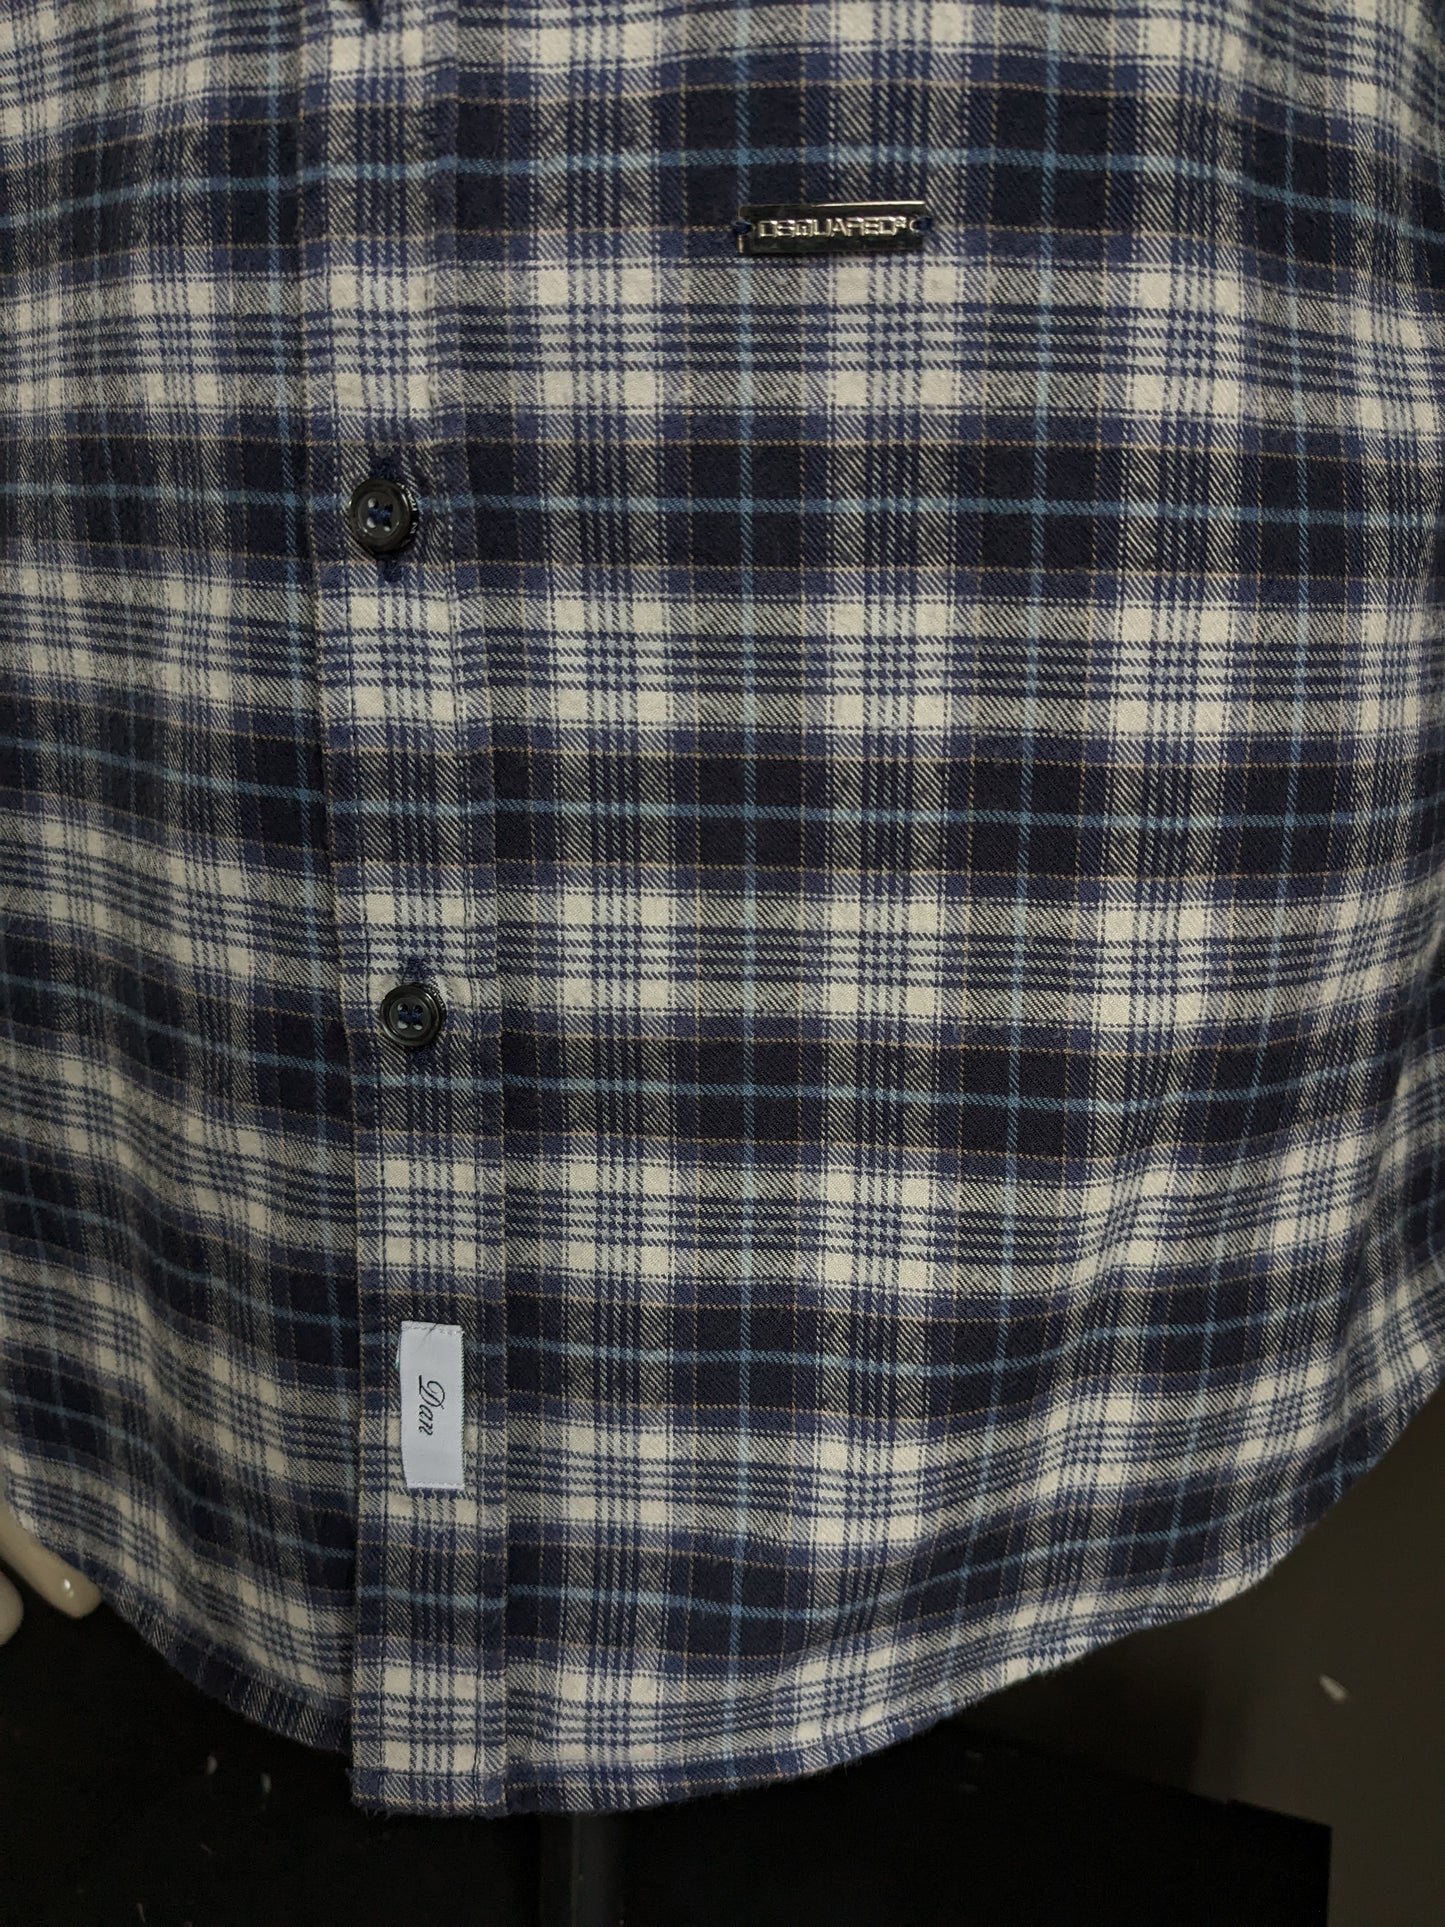 Camicia di flanella dsquared2. Checker blu beige. Taglia 54 / L.